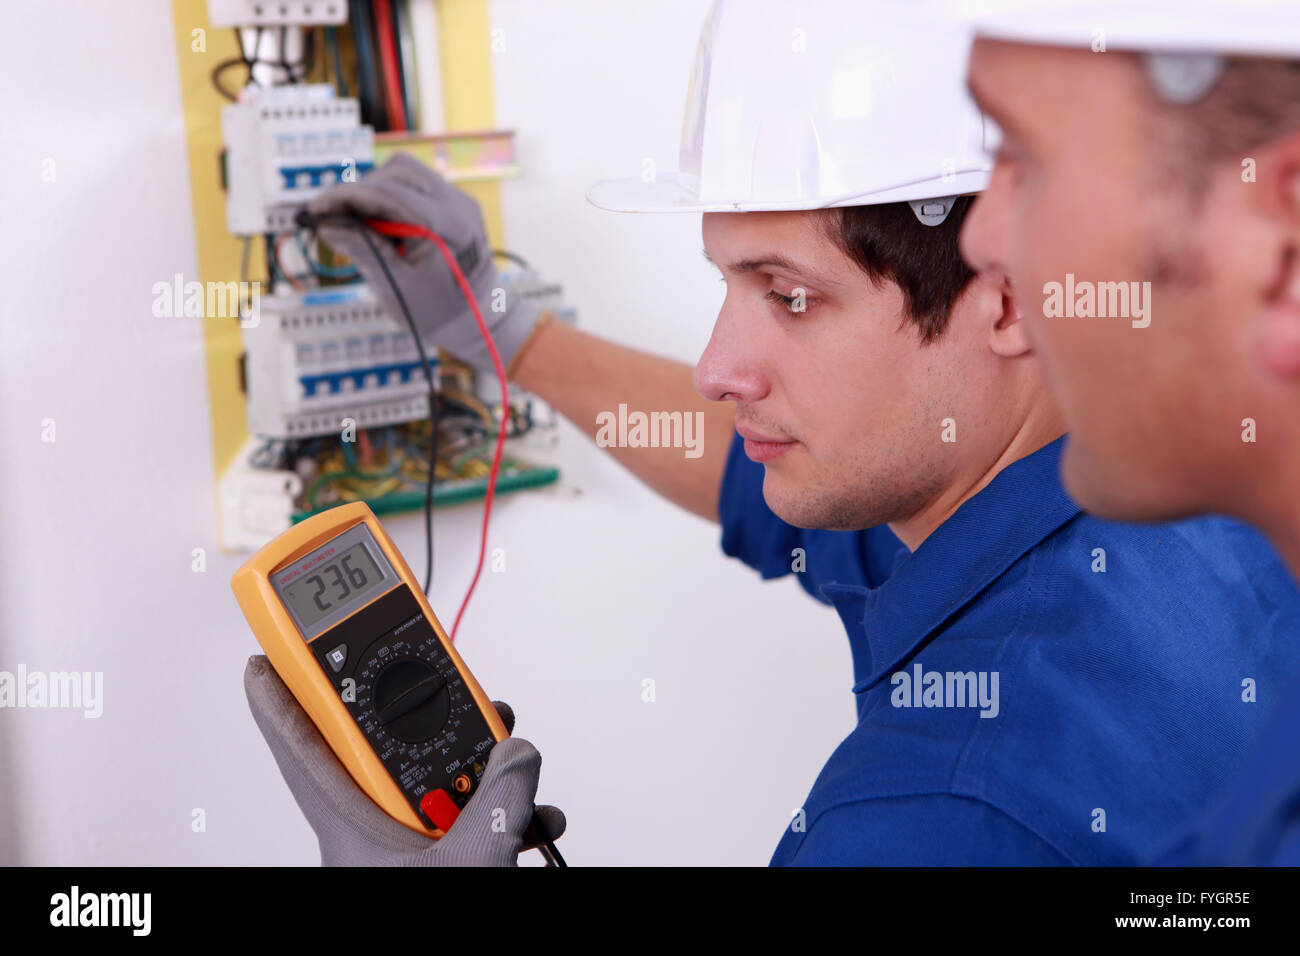 Zwei Techniker prüfen elektrische Ausrüstung Stockfoto